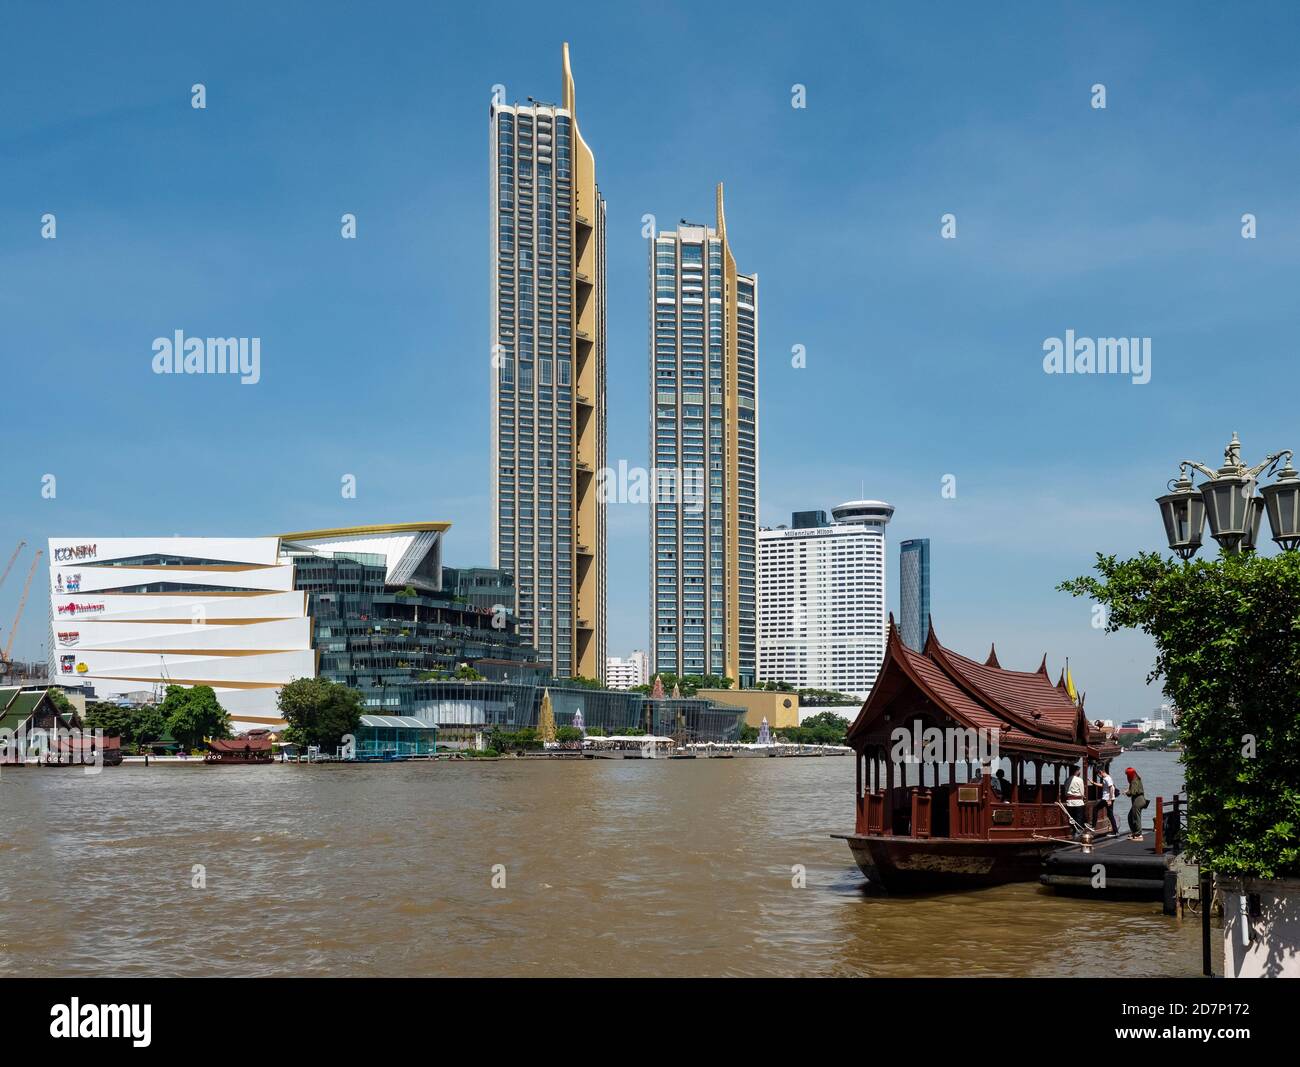 Fiume Chao Praya a Bangkok con l'icona del centro commerciale Siam e le torri di residenza sul fiume. Più in alto sul fiume, il Millenium Hilton è visibile. Foto Stock